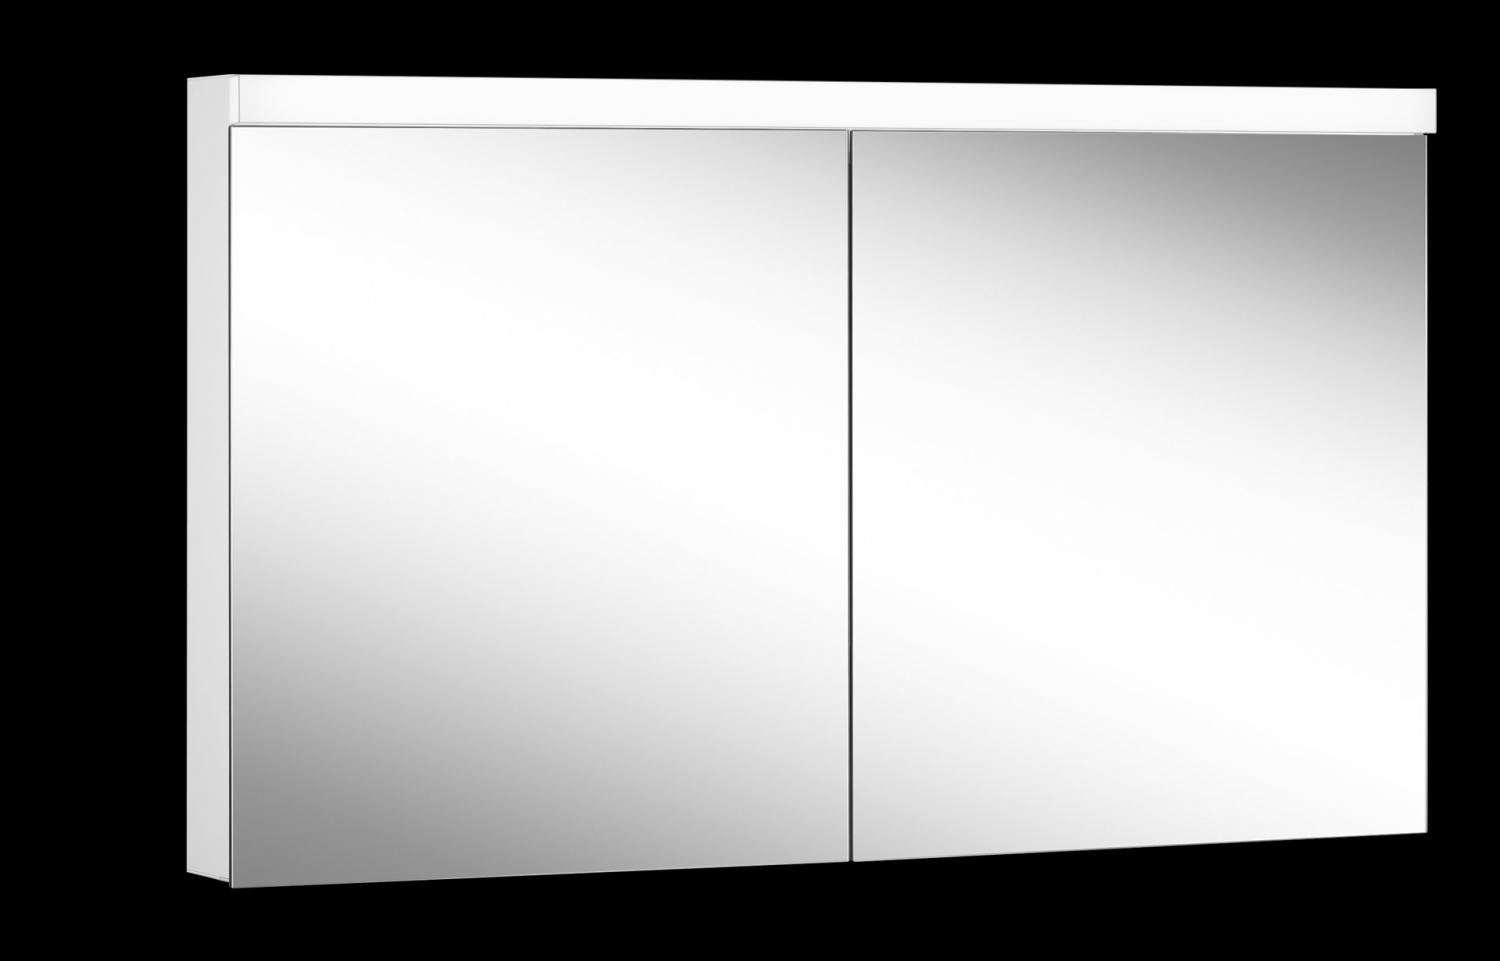 Schneider LOWLINE Plus LED Lichtspiegelschrank, 2 Doppelspiegeltüren, 130x74,8x13,5cm, 172. 130, Ausführung: EU-Norm/Korpus weiss/4000K - 172. 130. 02. 02 Bild 1